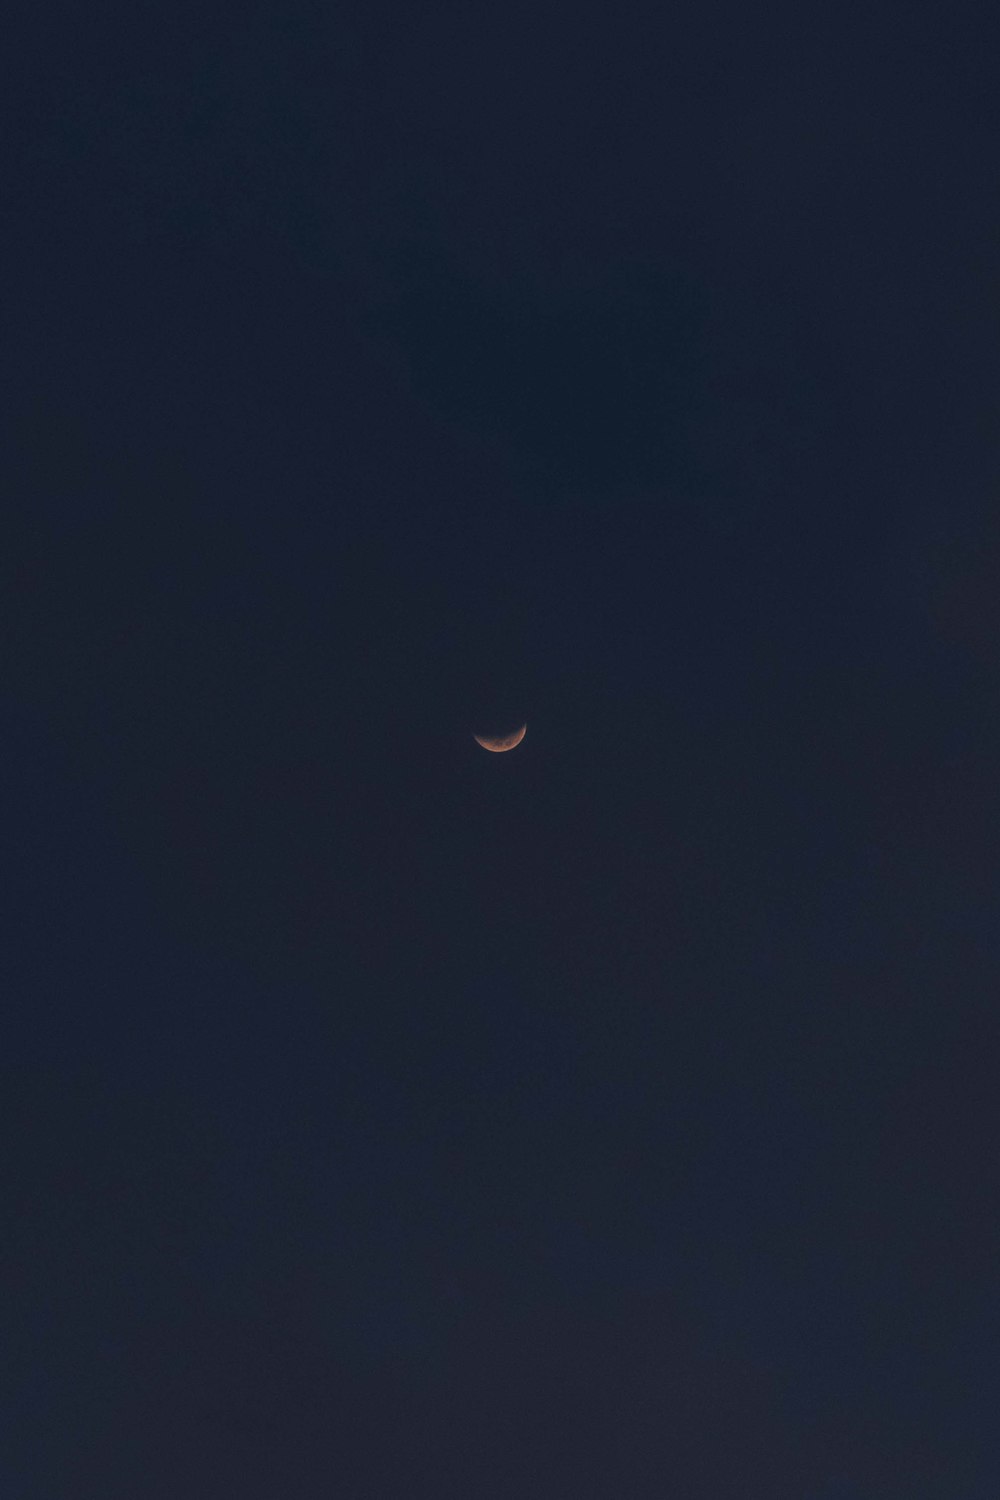 the moon is seen in the dark sky